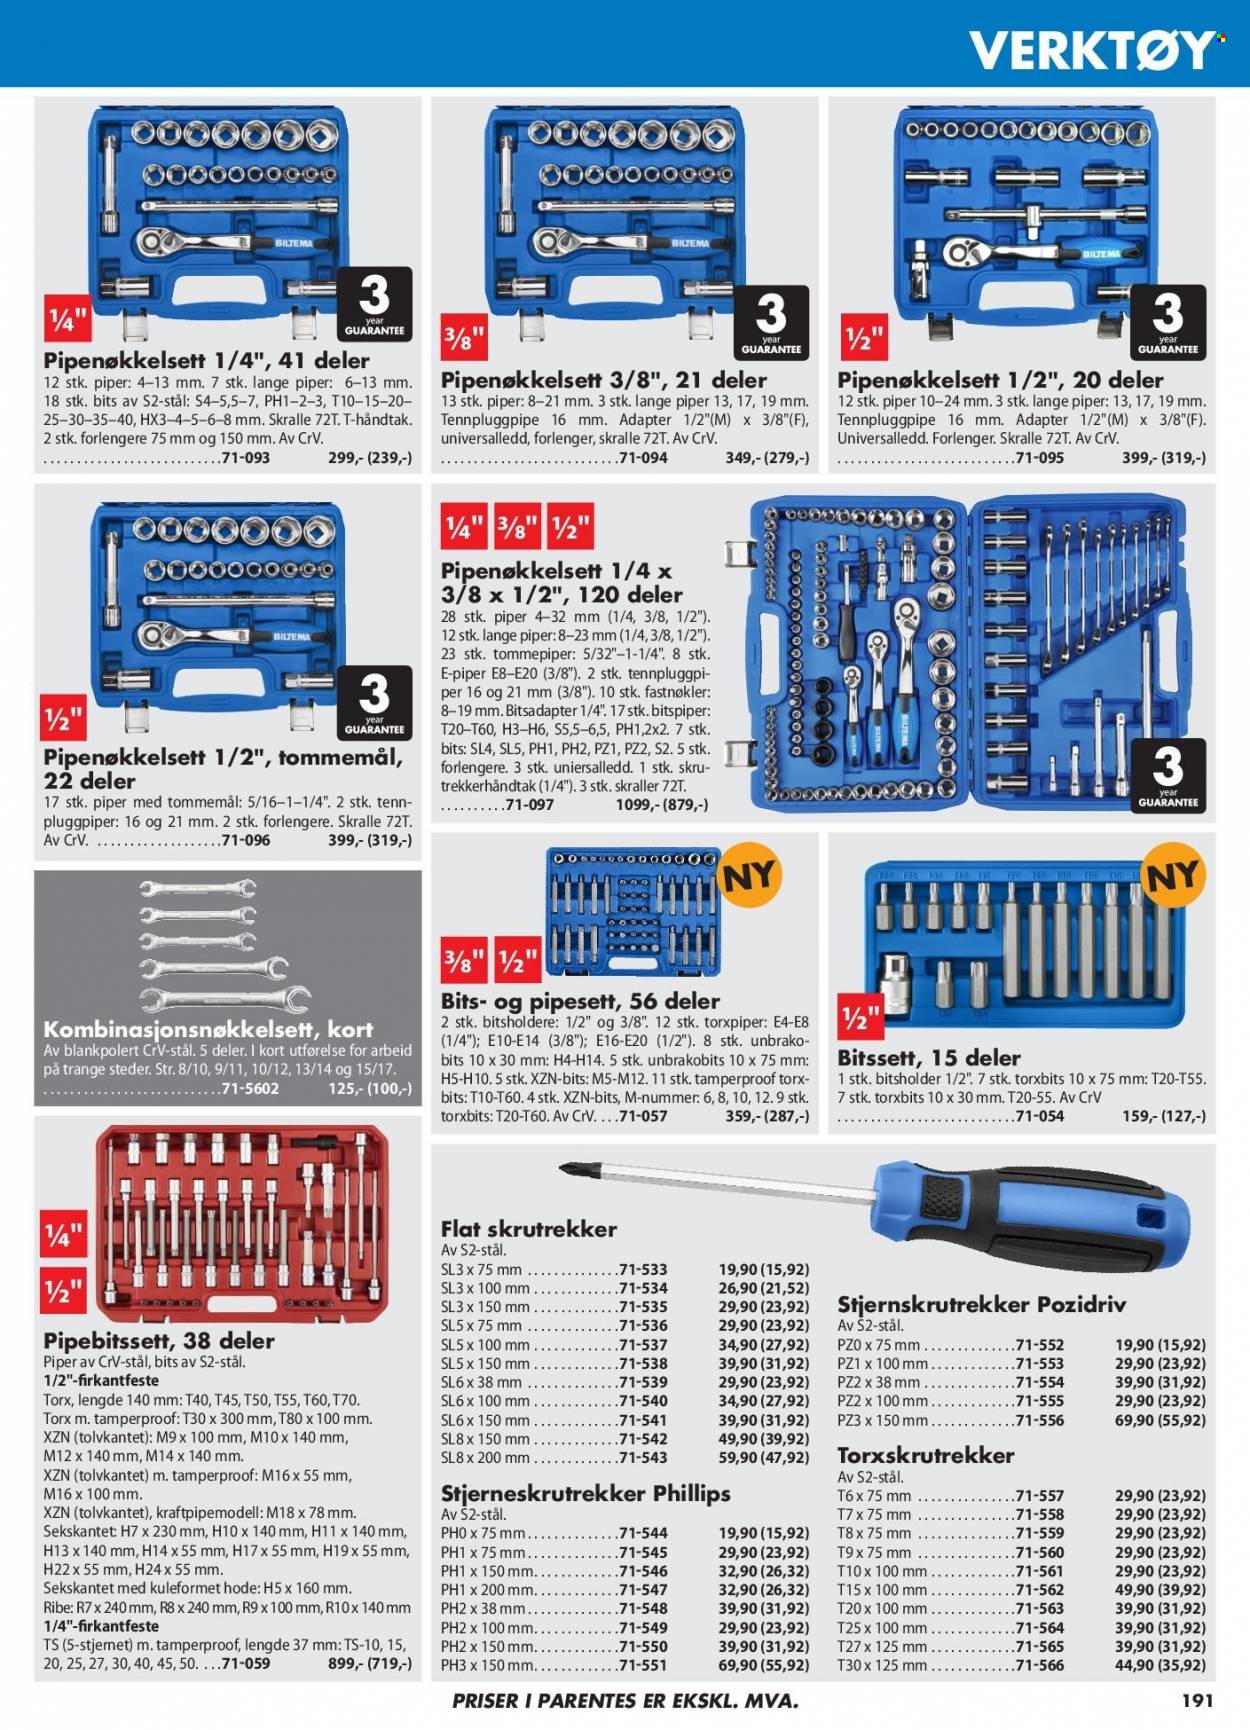 thumbnail - Kundeavis Biltema - Produkter fra tilbudsaviser - pipesett, bitspiper, bitssett, verktøy, skrutrekker. Side 191.